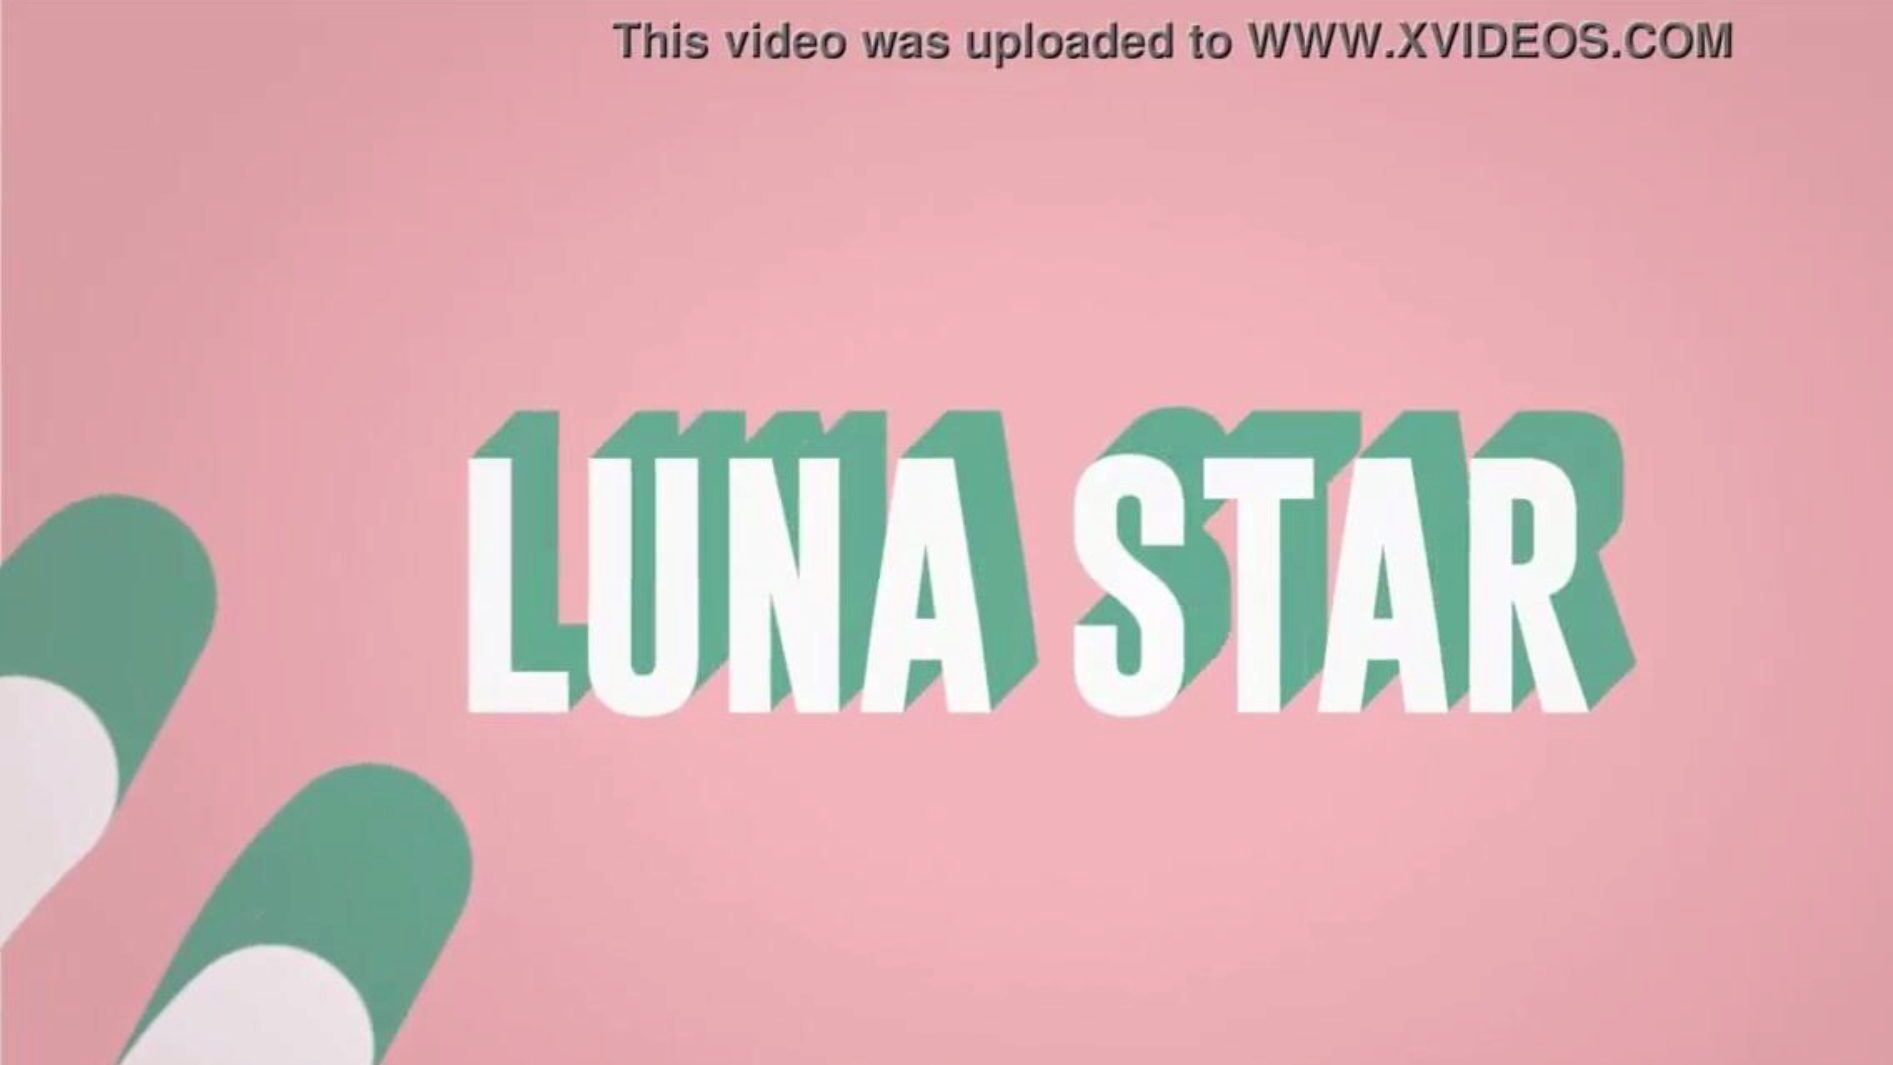 det är mitt jävla wifi: brazzers avsnitt med luna star; se fullständigt på www.zzfull.com/luna